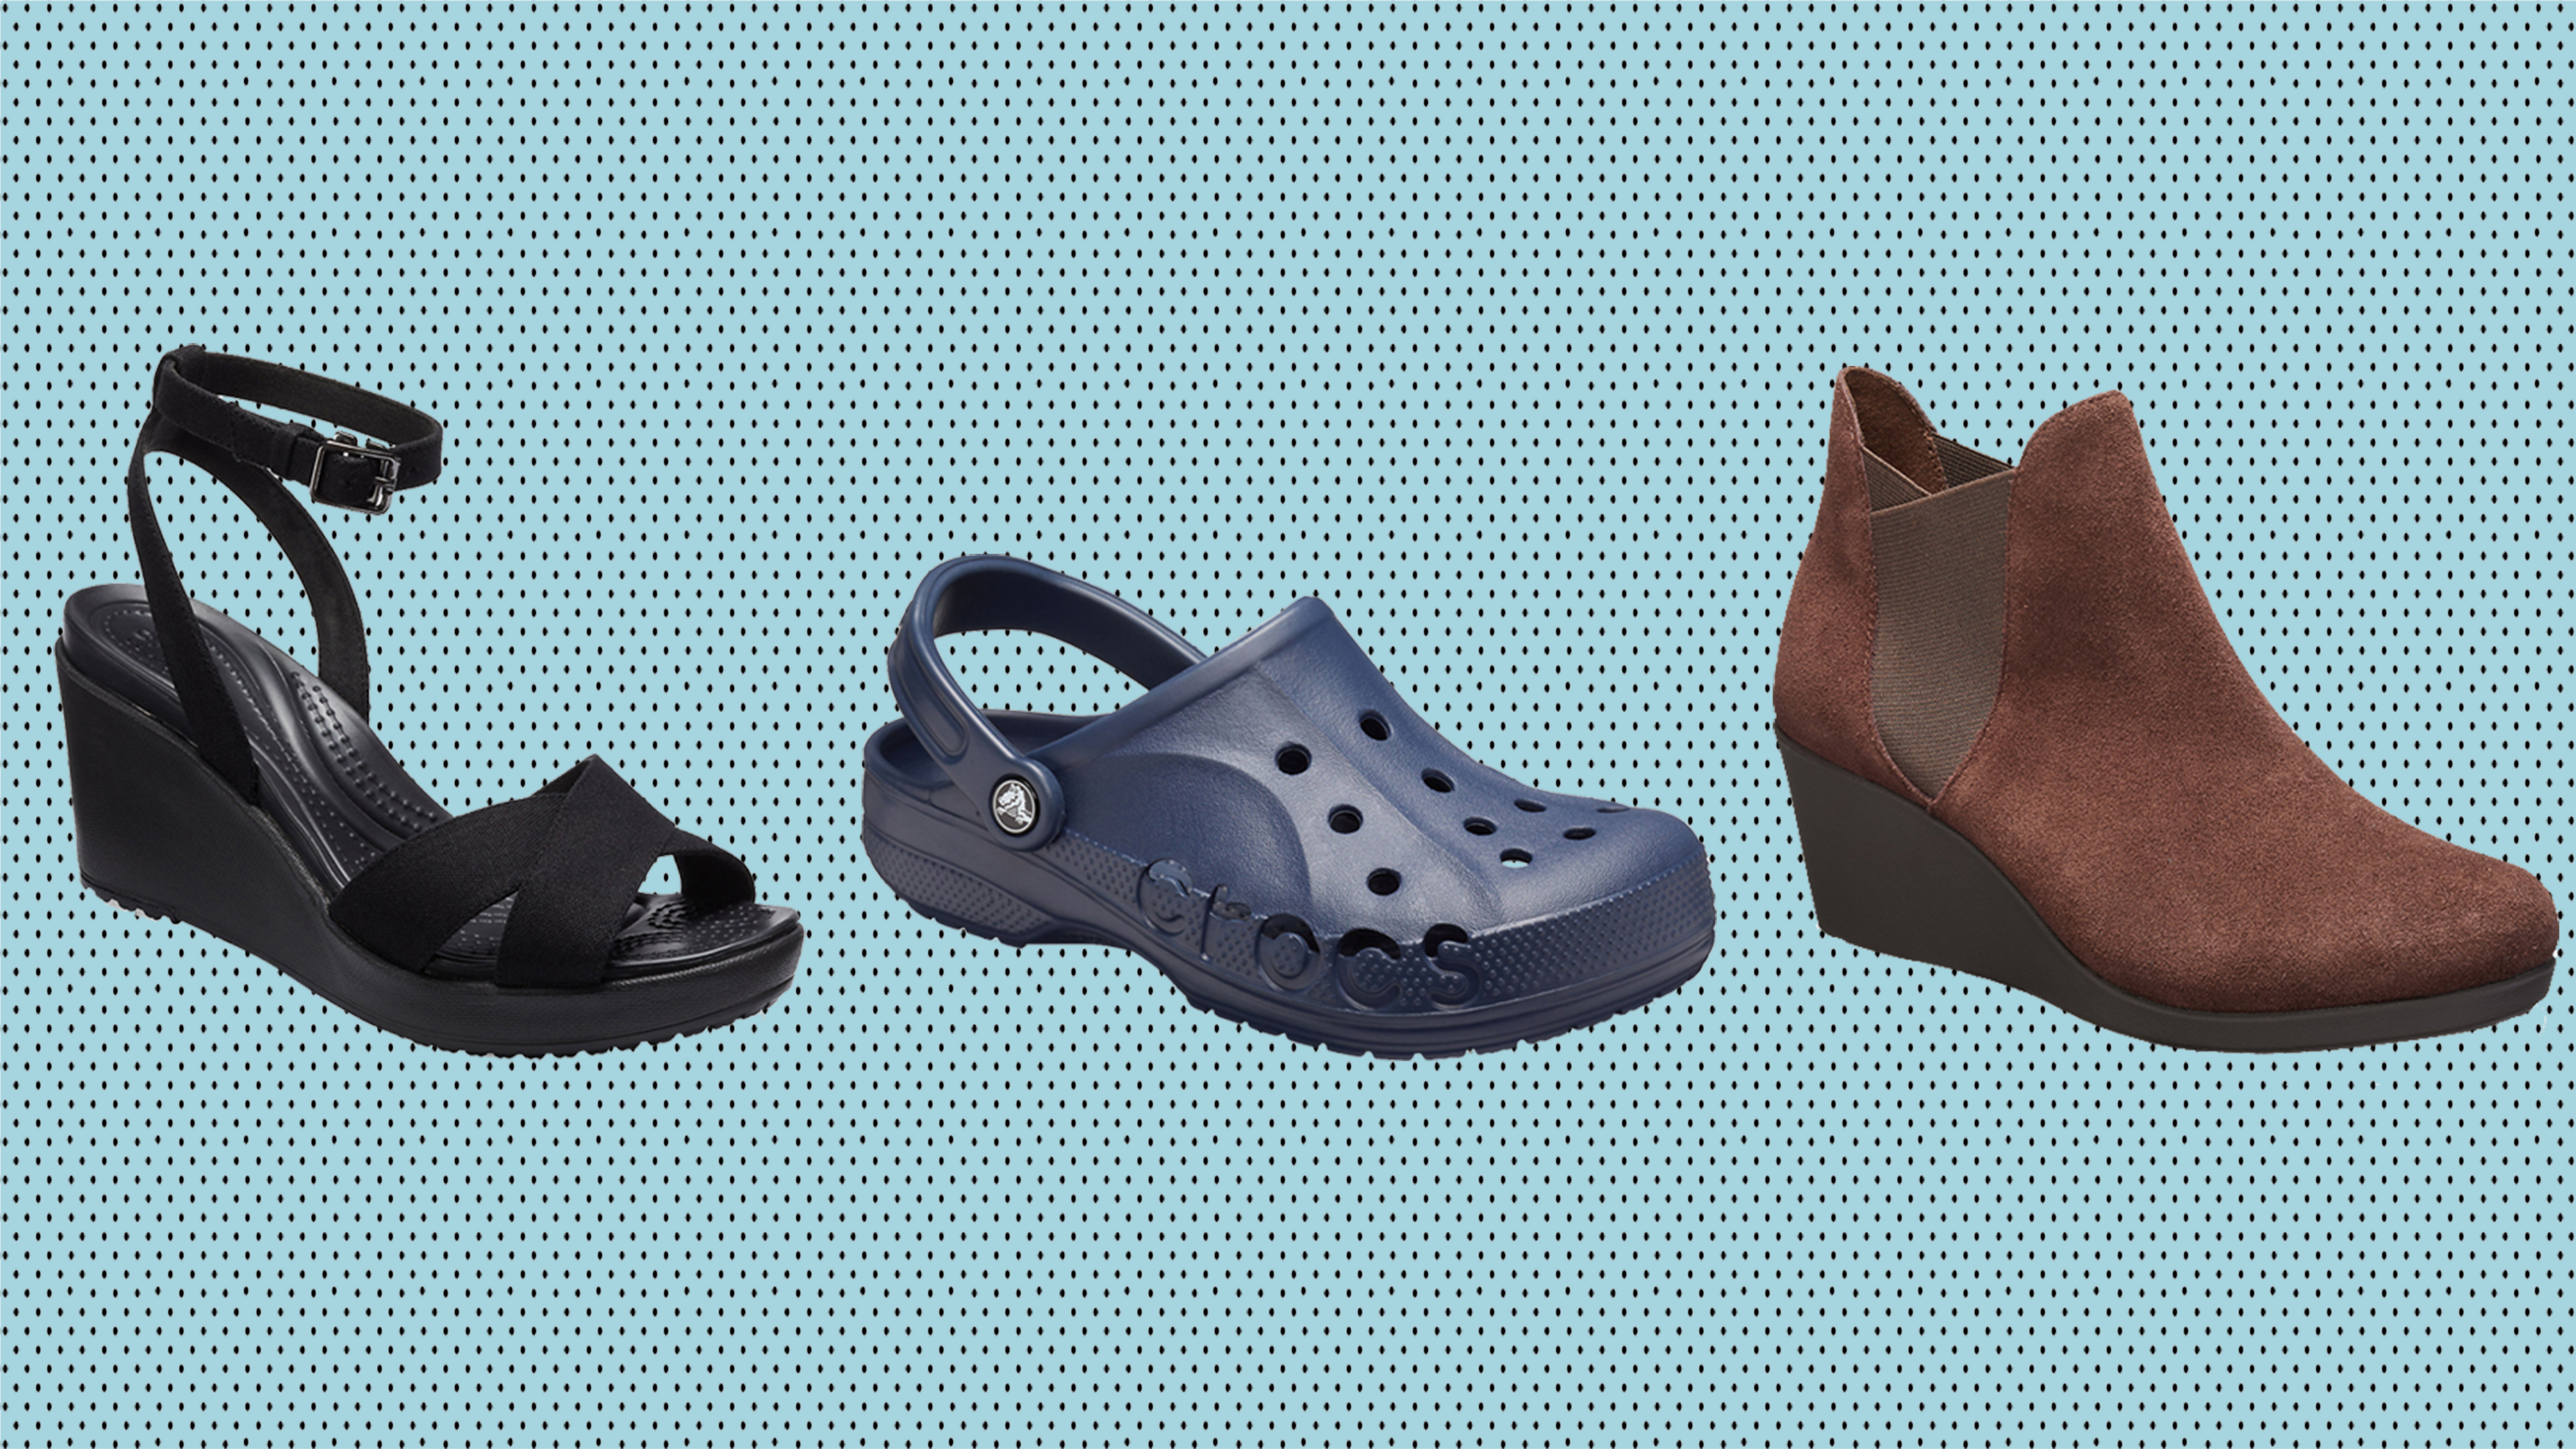 Crocs sale: Save 40% on clogs, sandals 